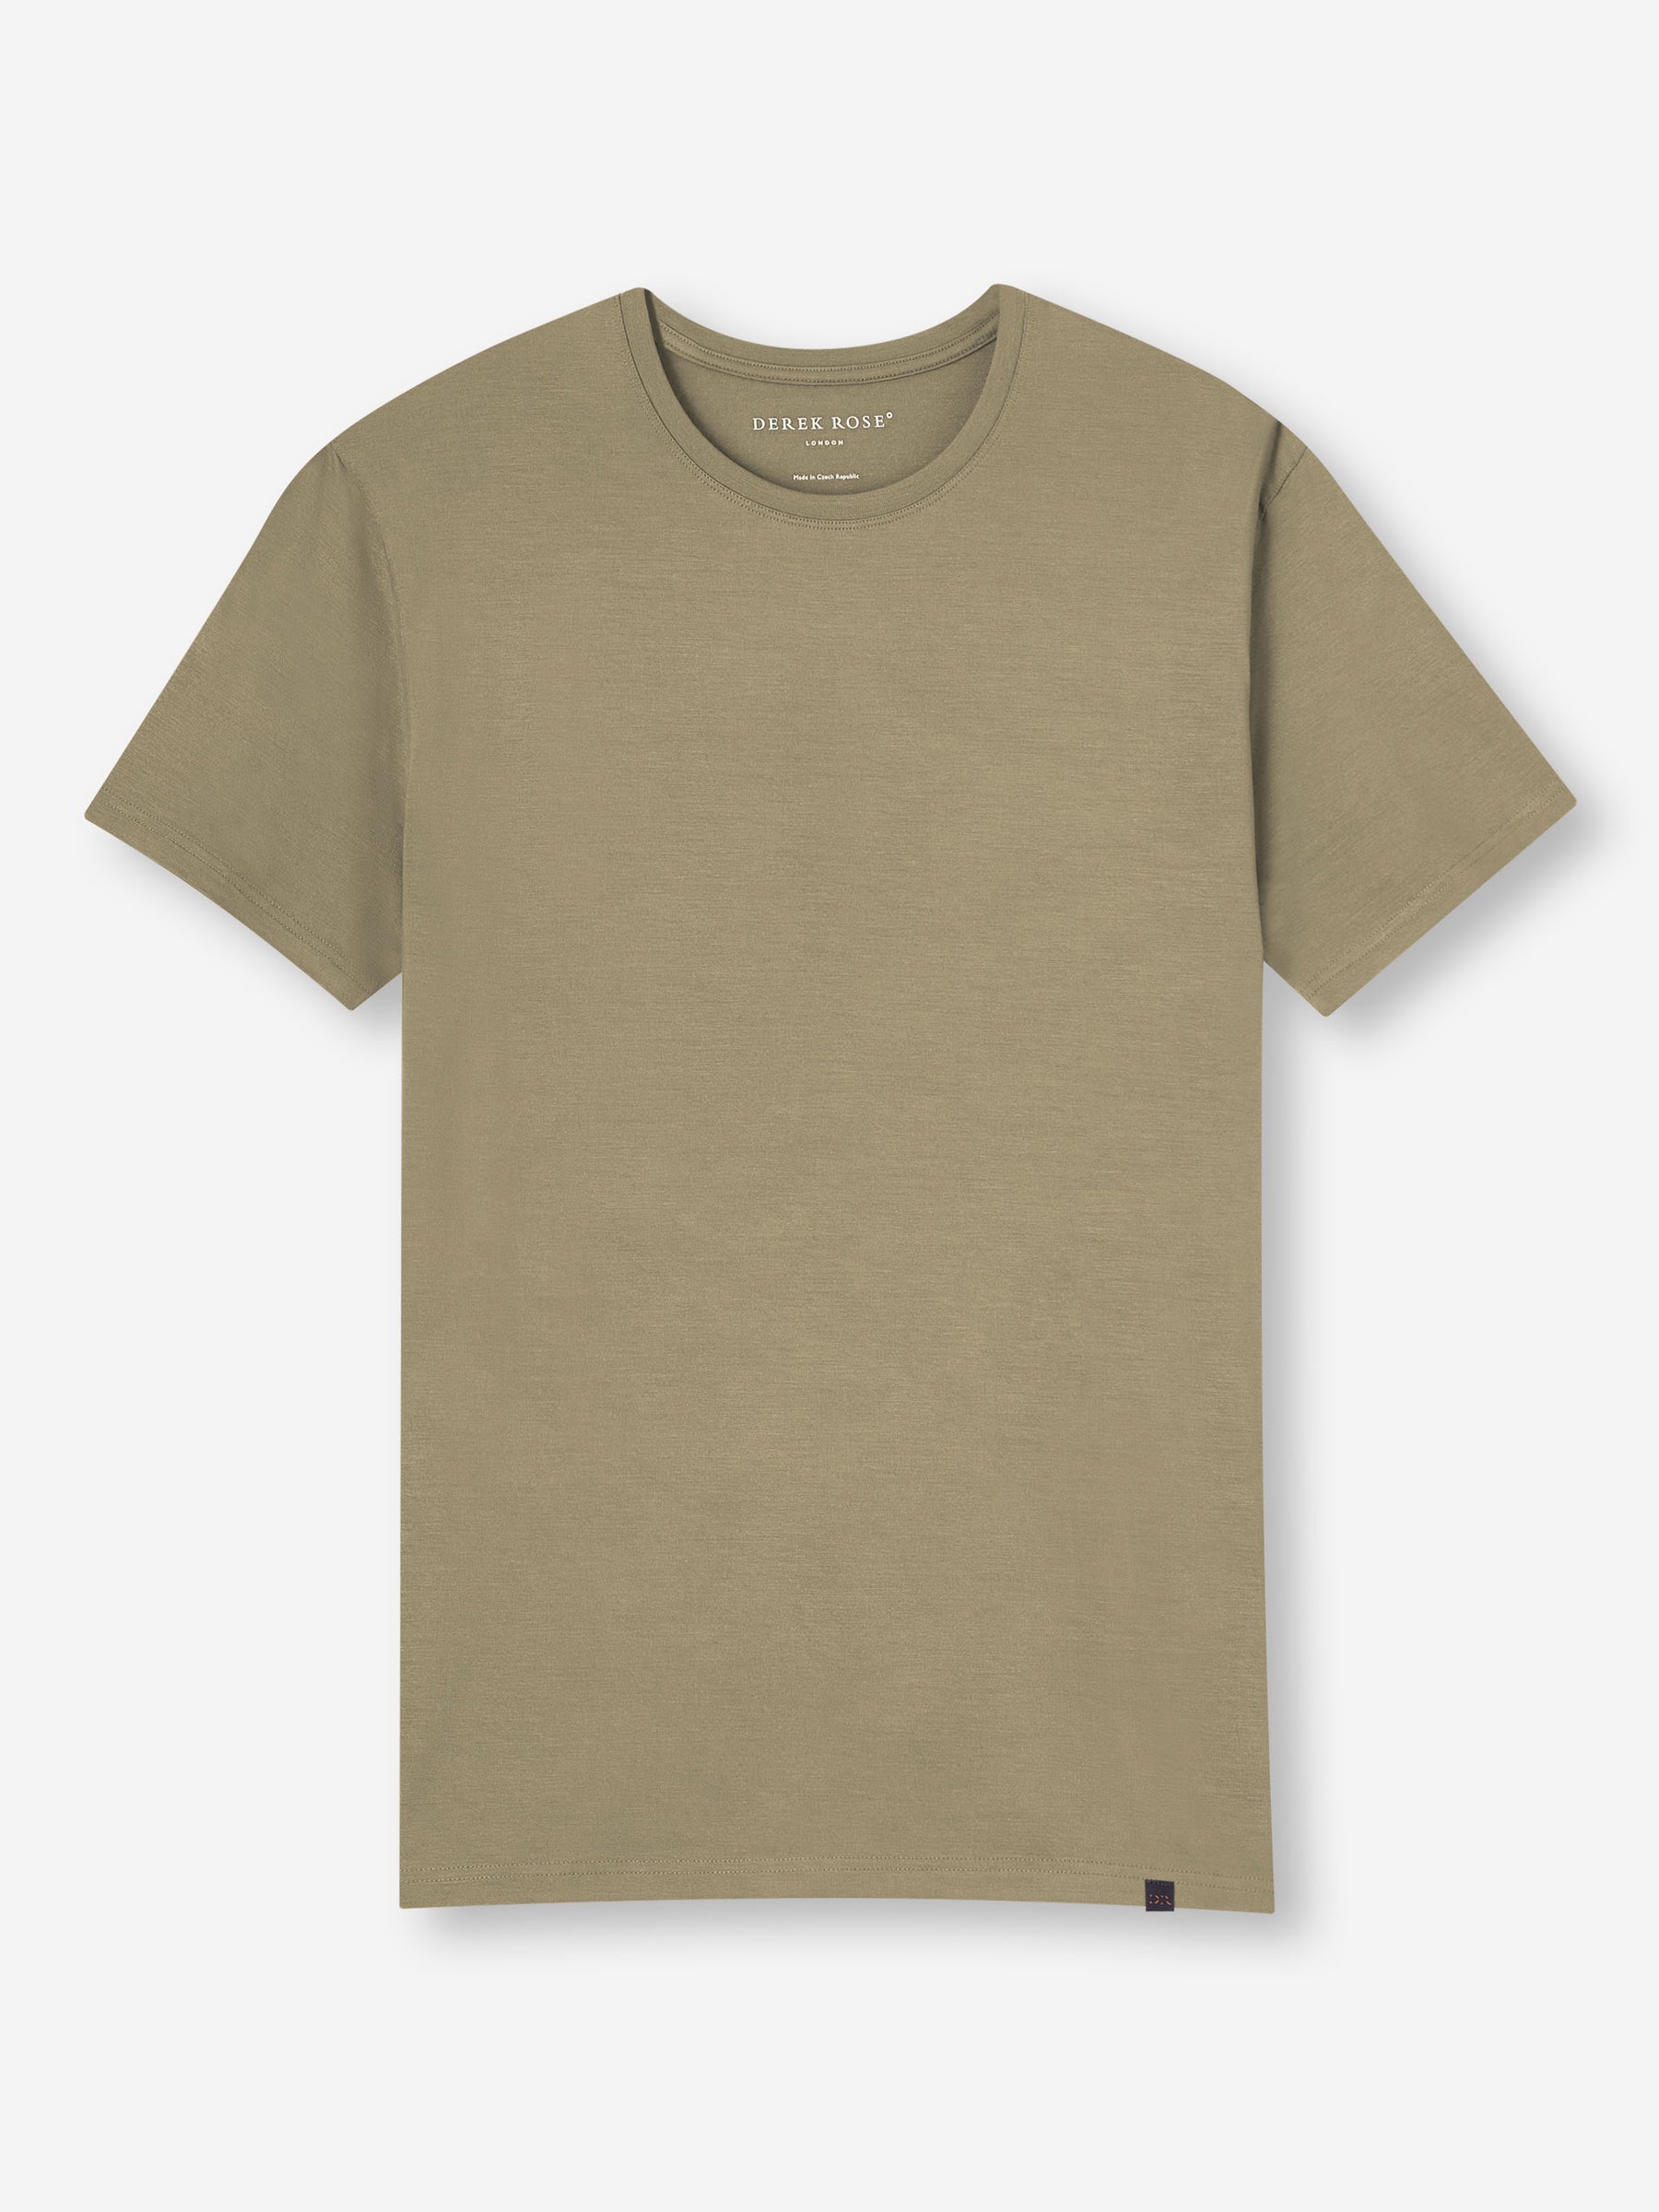 Men's T-Shirt Basel Micro Modal Stretch Khaki